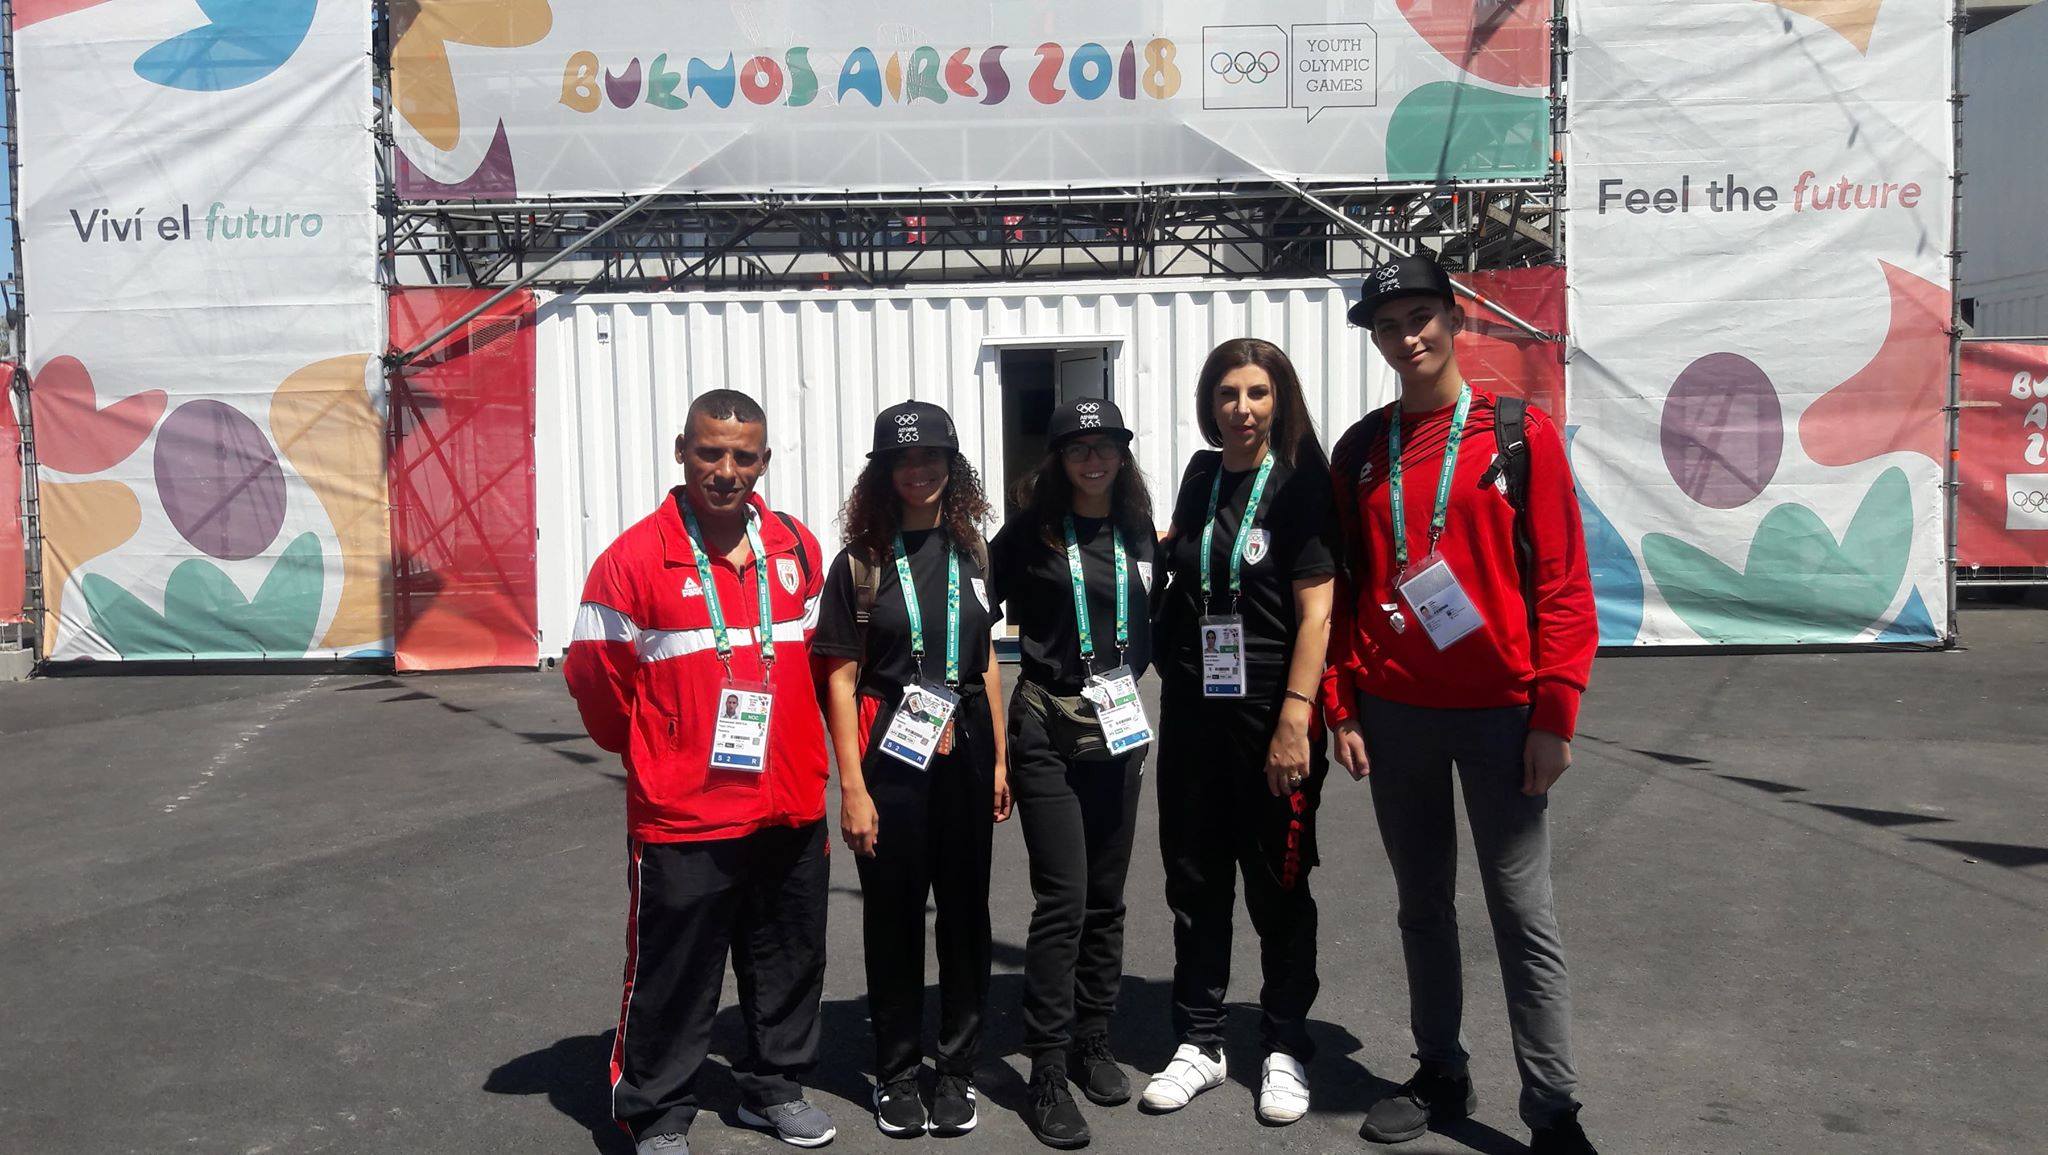 بعثة فلسطين تتأهب للمشاركة في دورة الألعاب الأولمبية للشباب